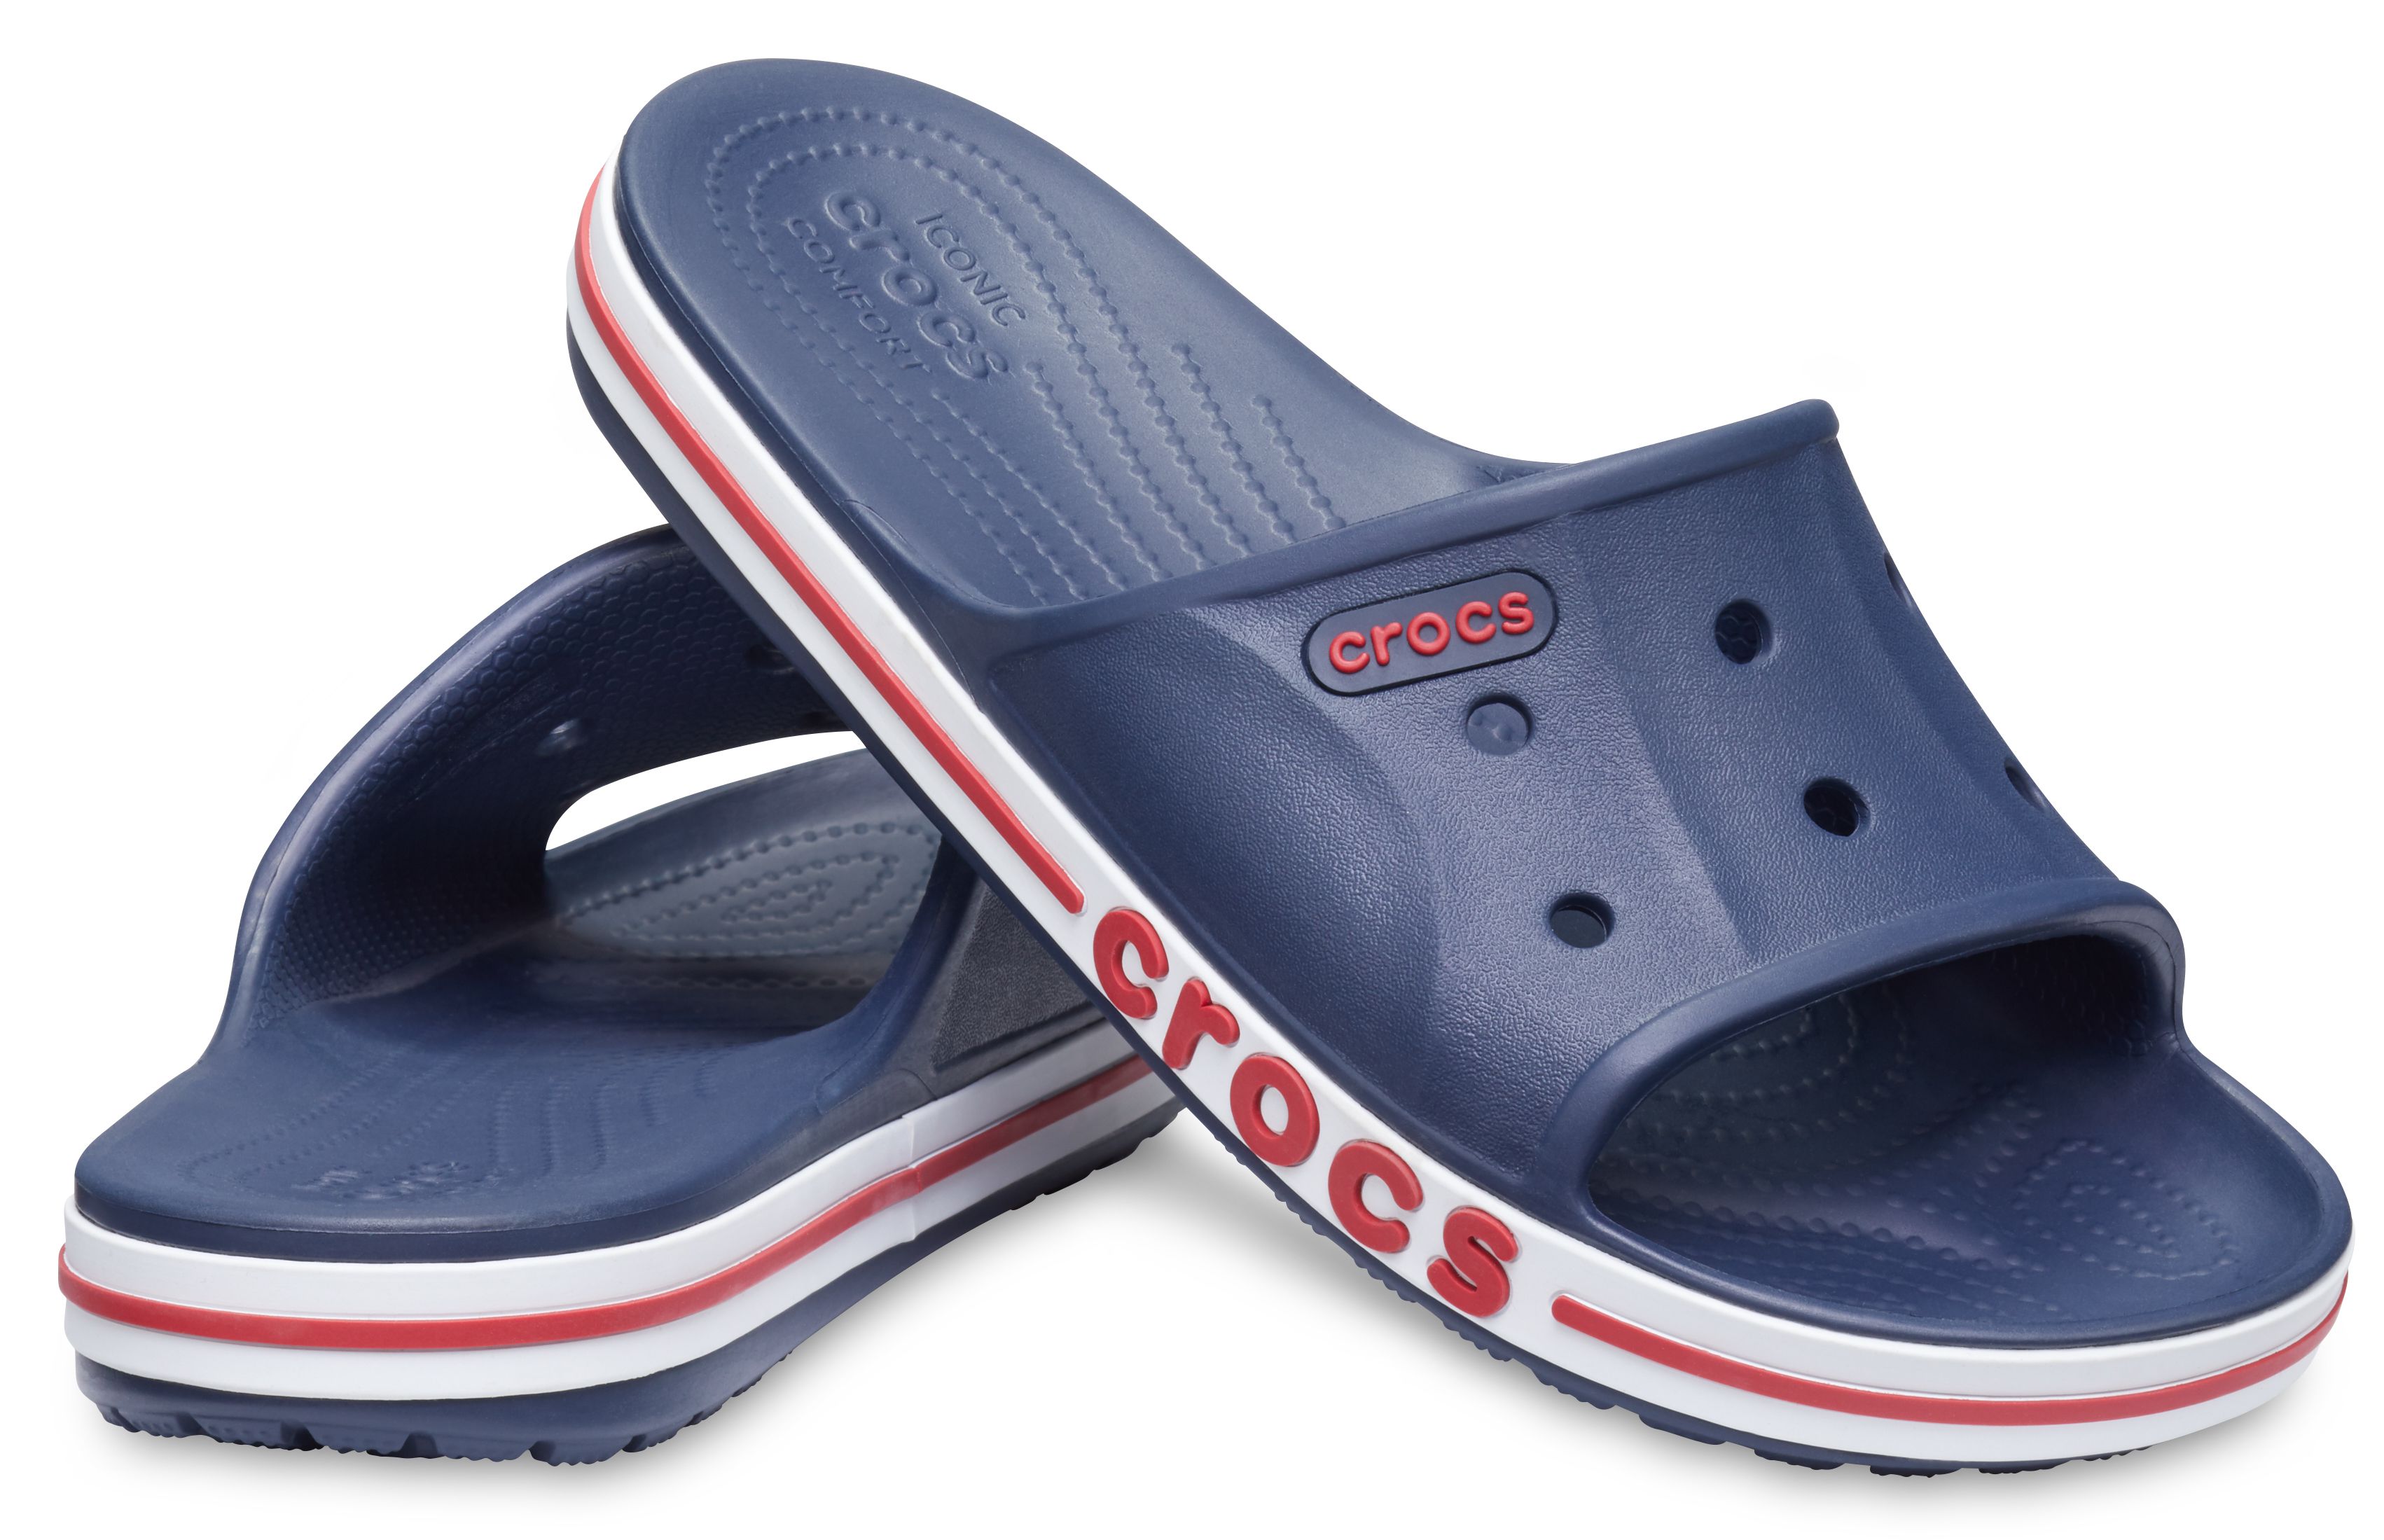  Crocs  Men  Bayaband Navy Sandals  Price in India Buy Crocs  